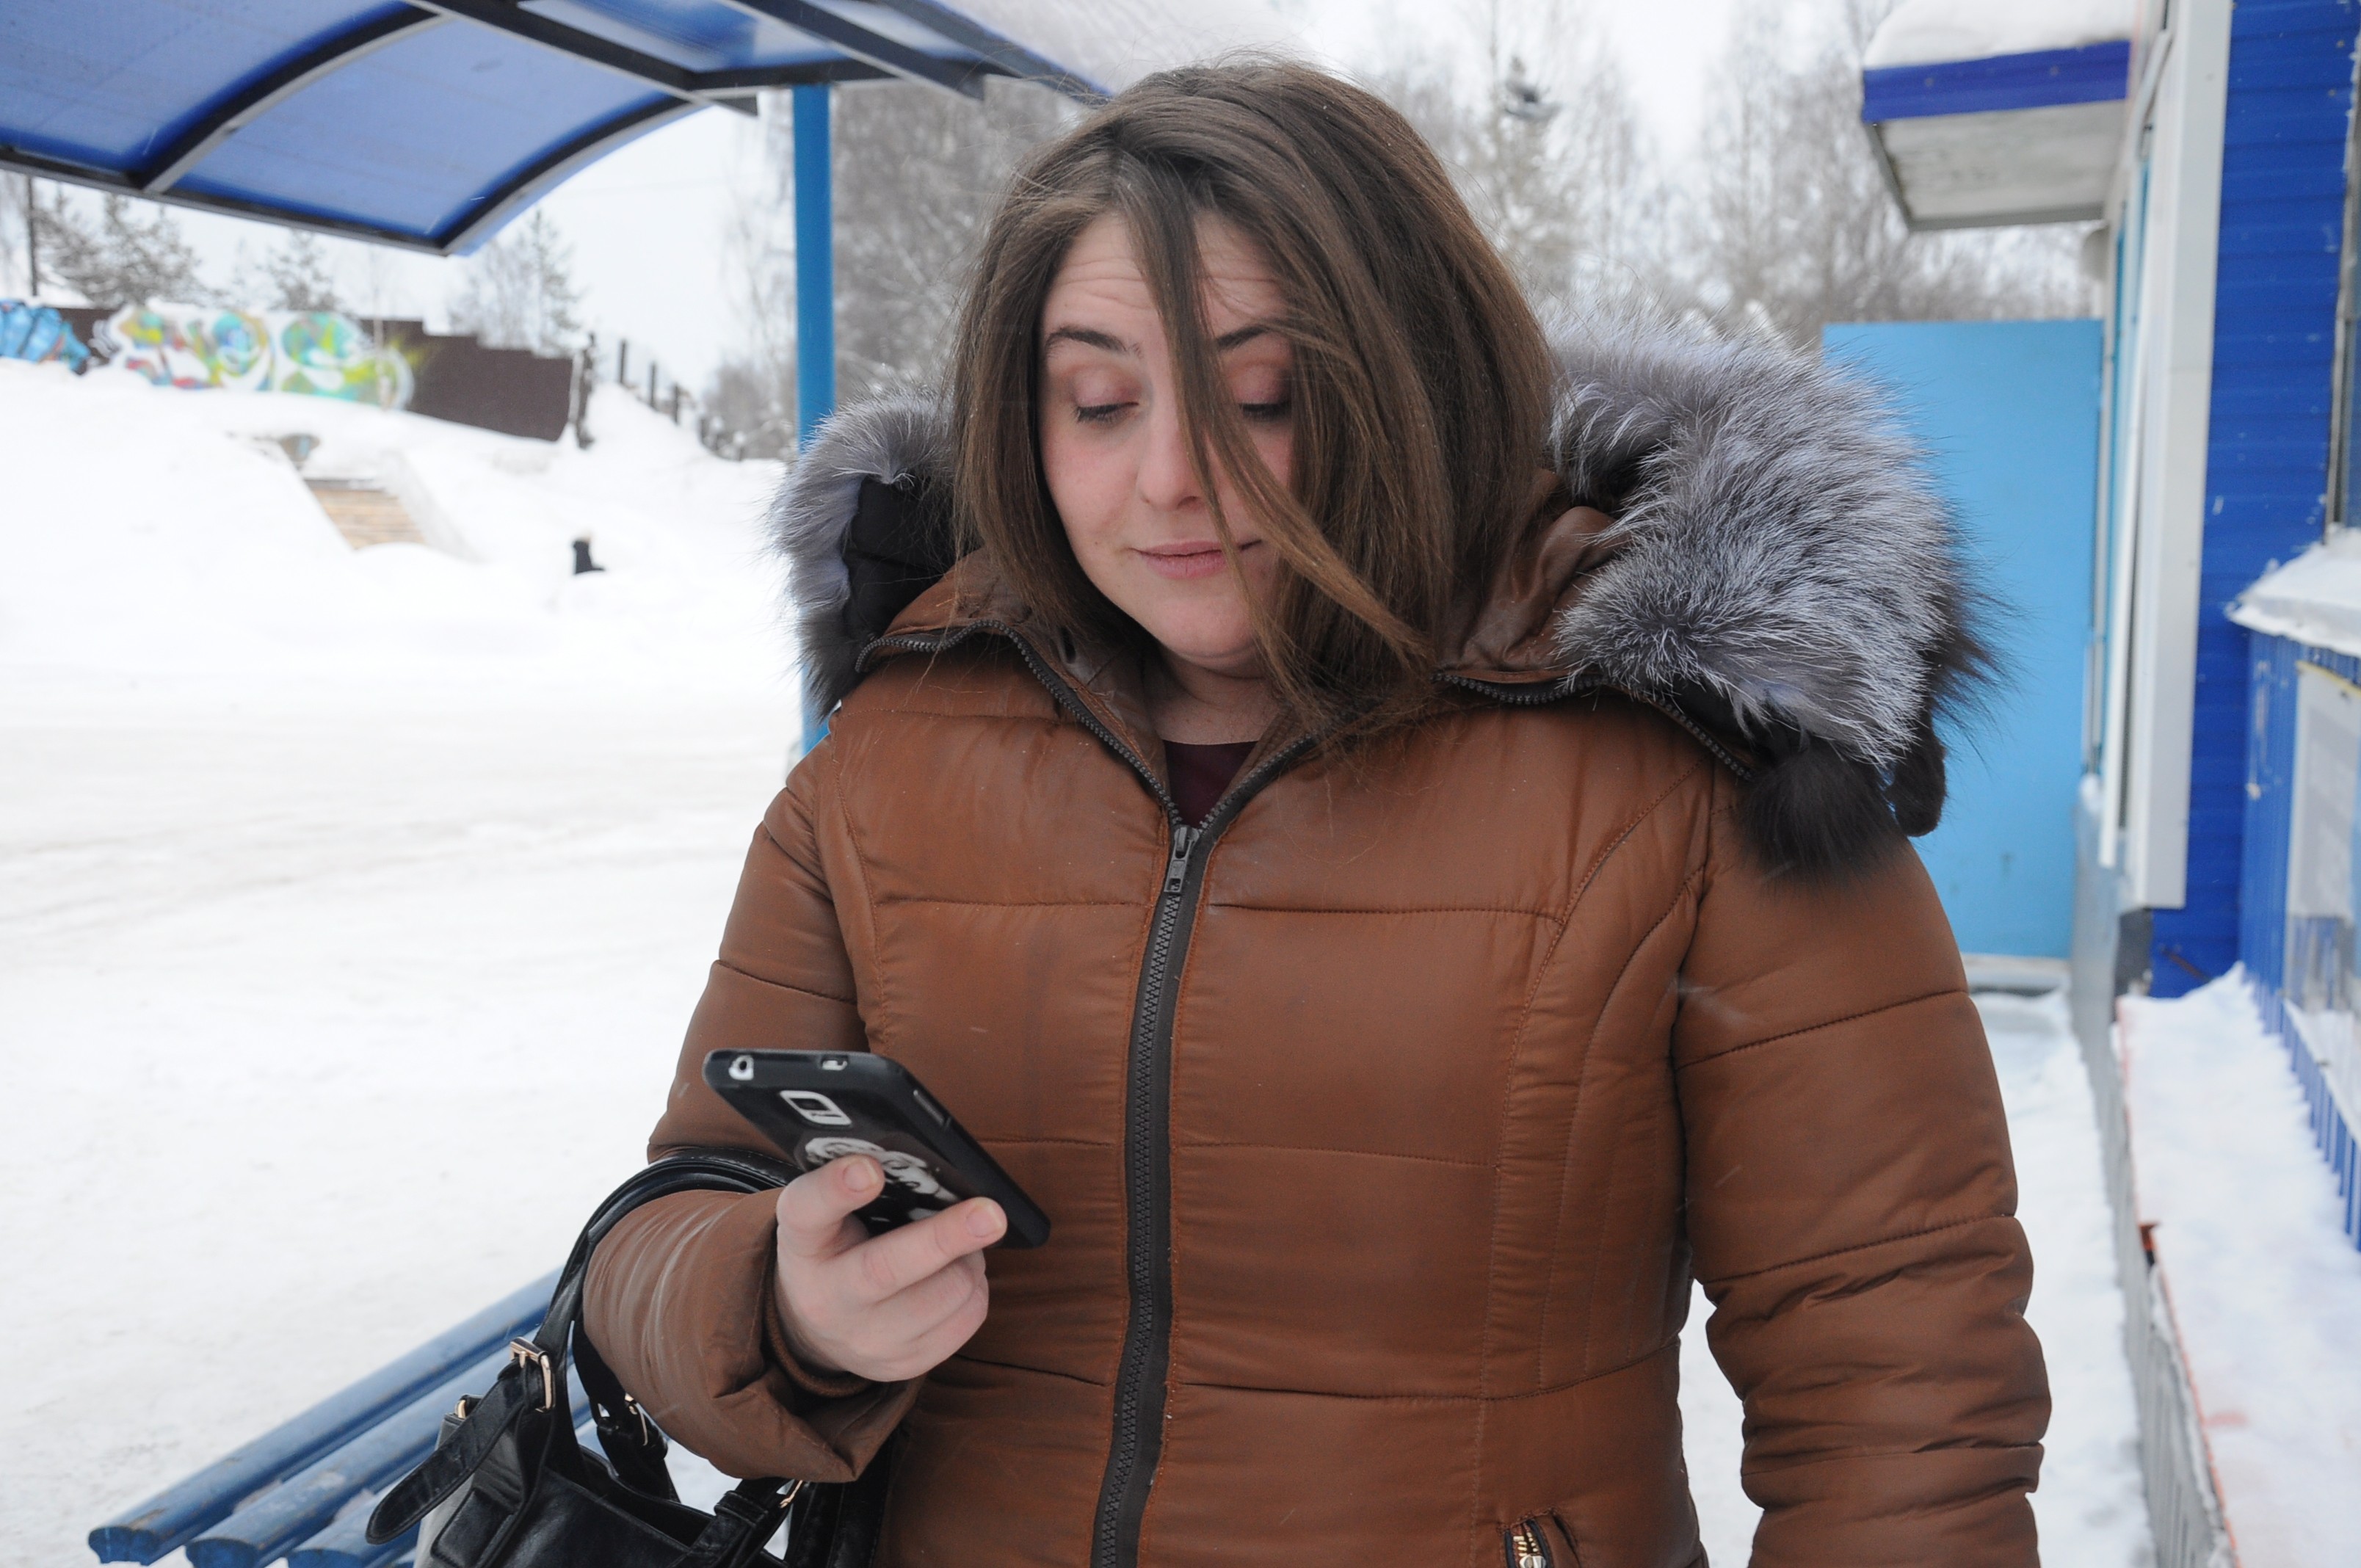 Йошкаролинка решила купить новенький смартфон, но в итоге обратилась в полицию